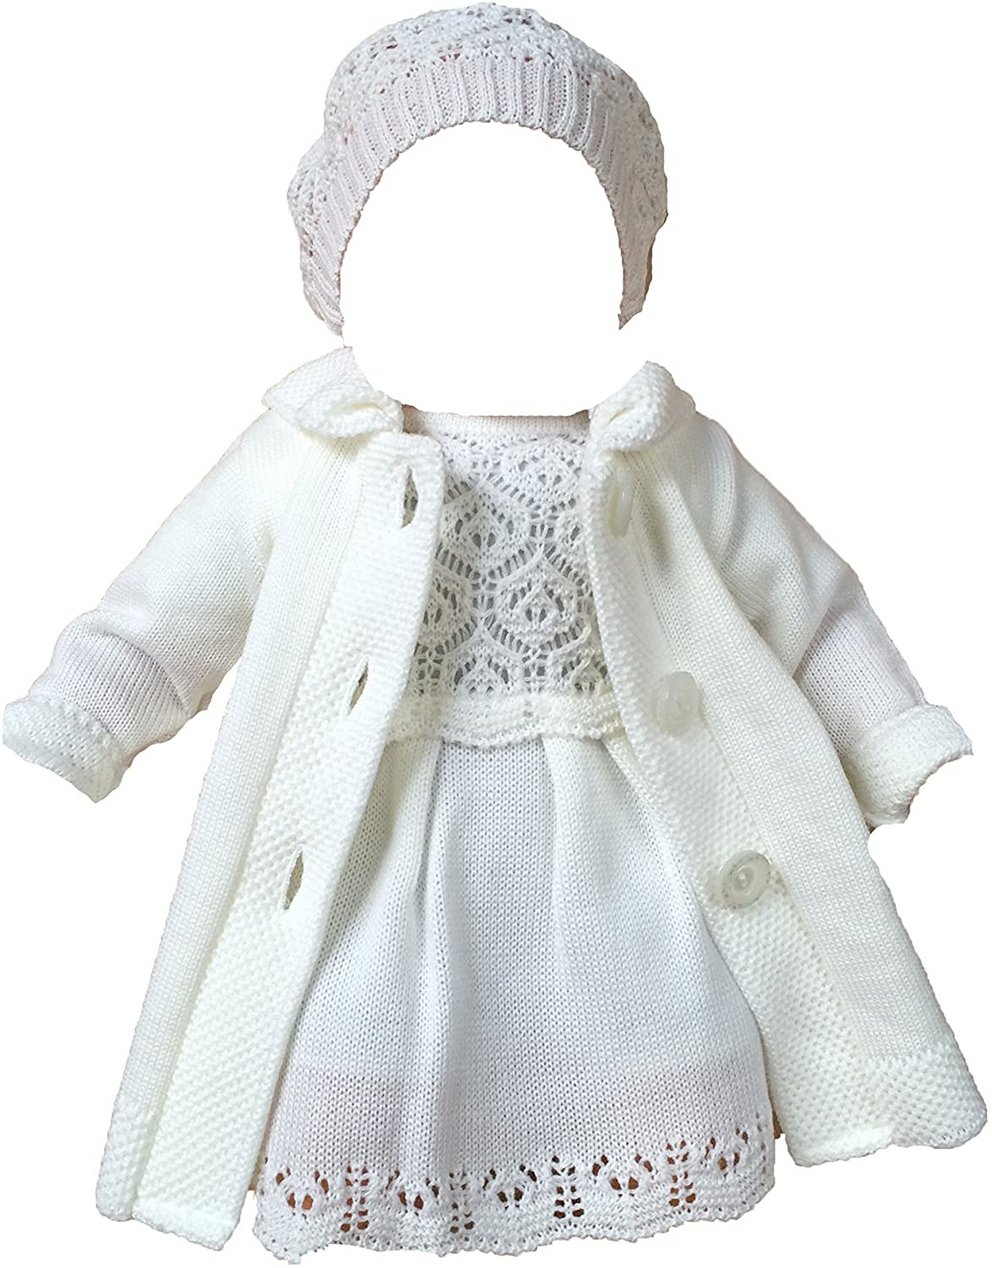 Taufkleid für Mädchen Baby Set Mütze und Kleid Strickkleid mit passender Mütze 